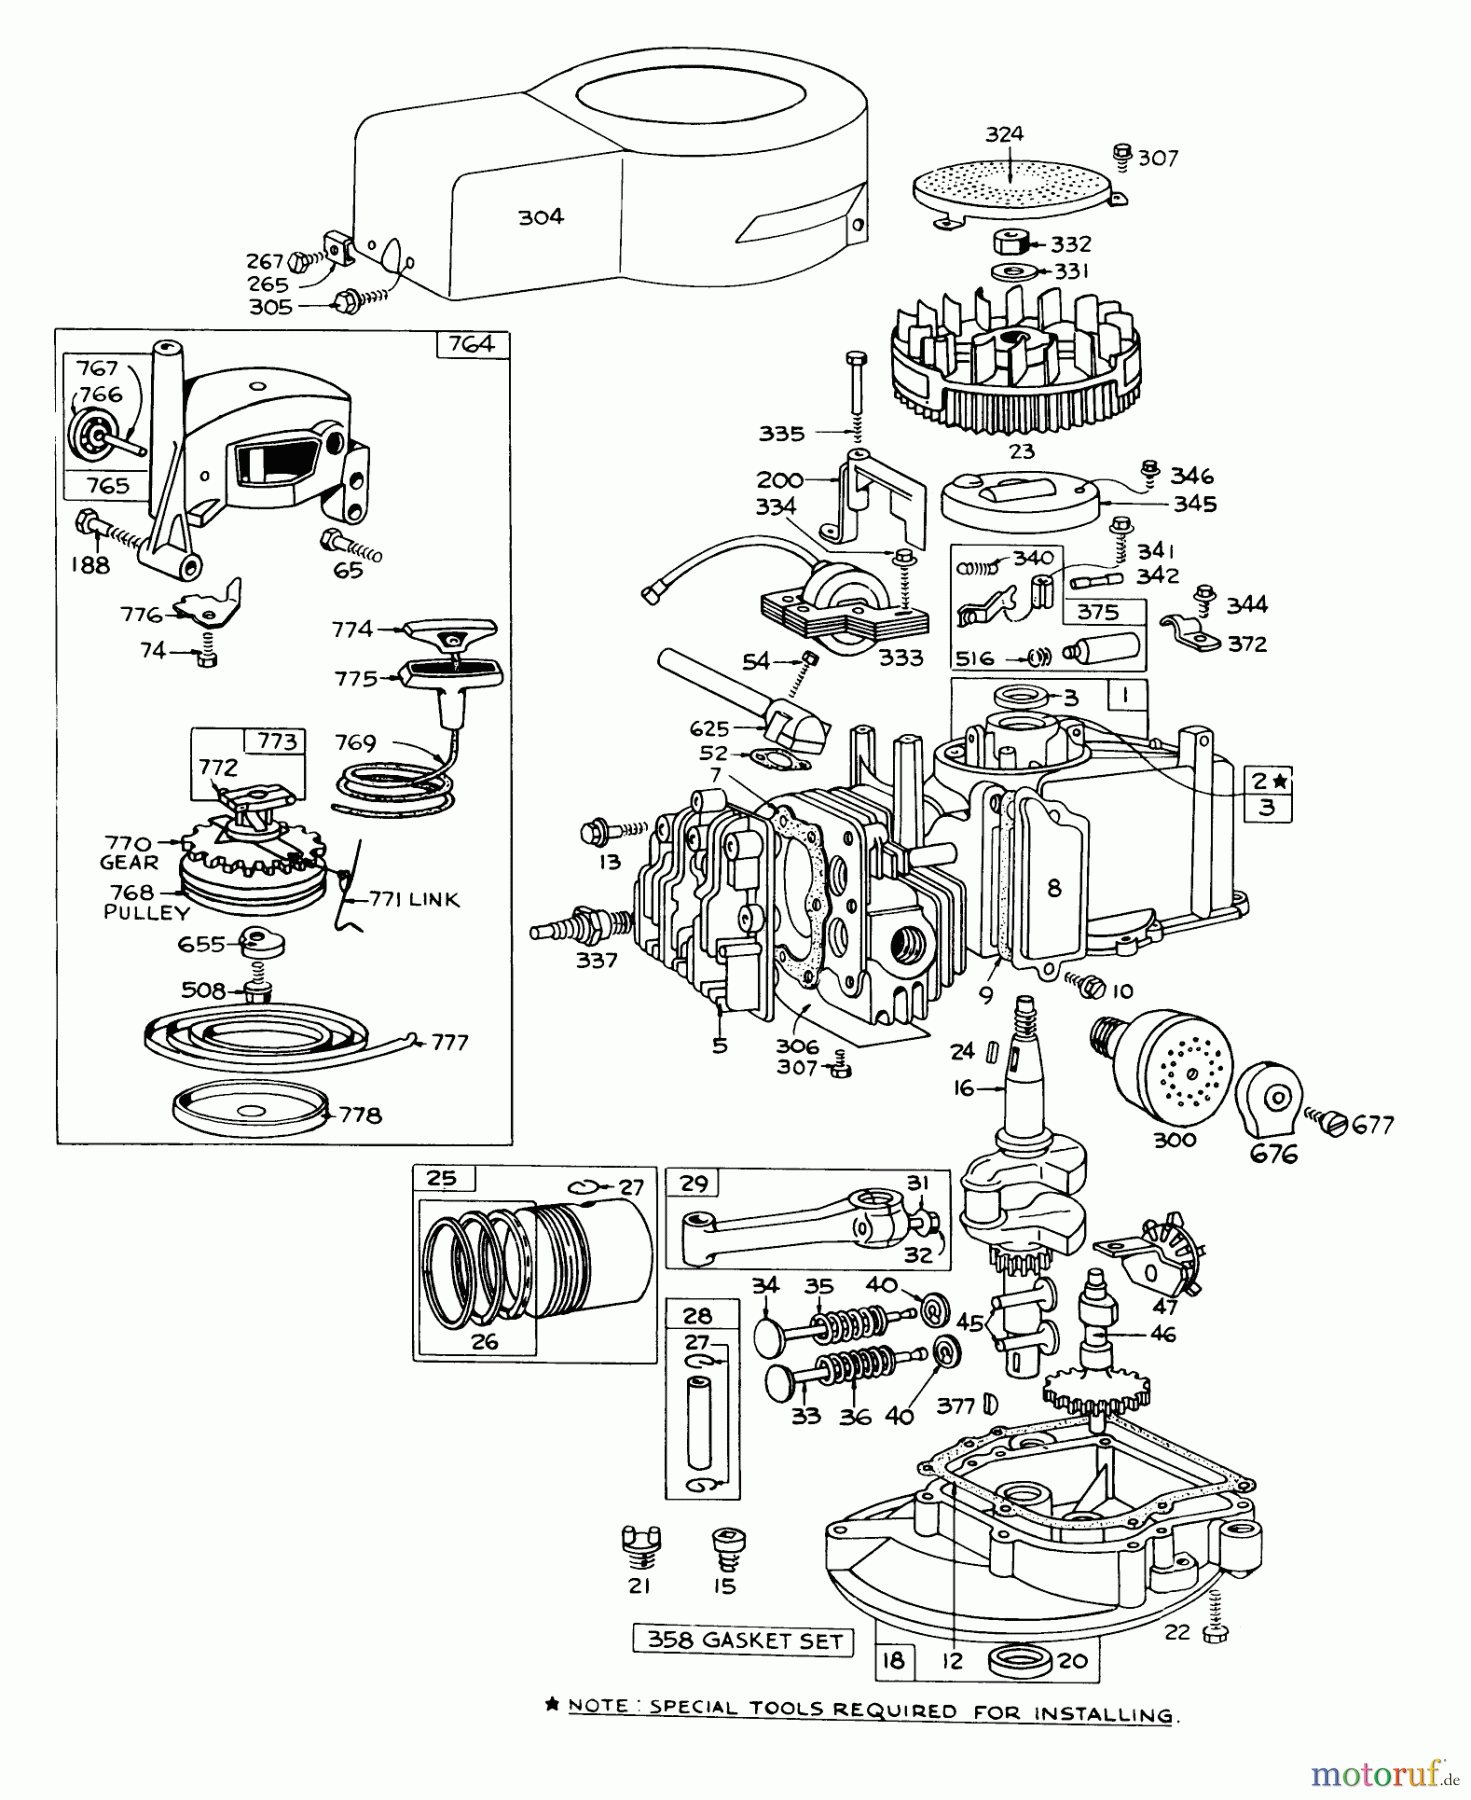  Toro Neu Mowers, Walk-Behind Seite 1 16172 - Toro Lawnmower, 1972 (2000001-2999999) ENGINE BRIGGS & STRATTON - MODEL 92908-1223-03